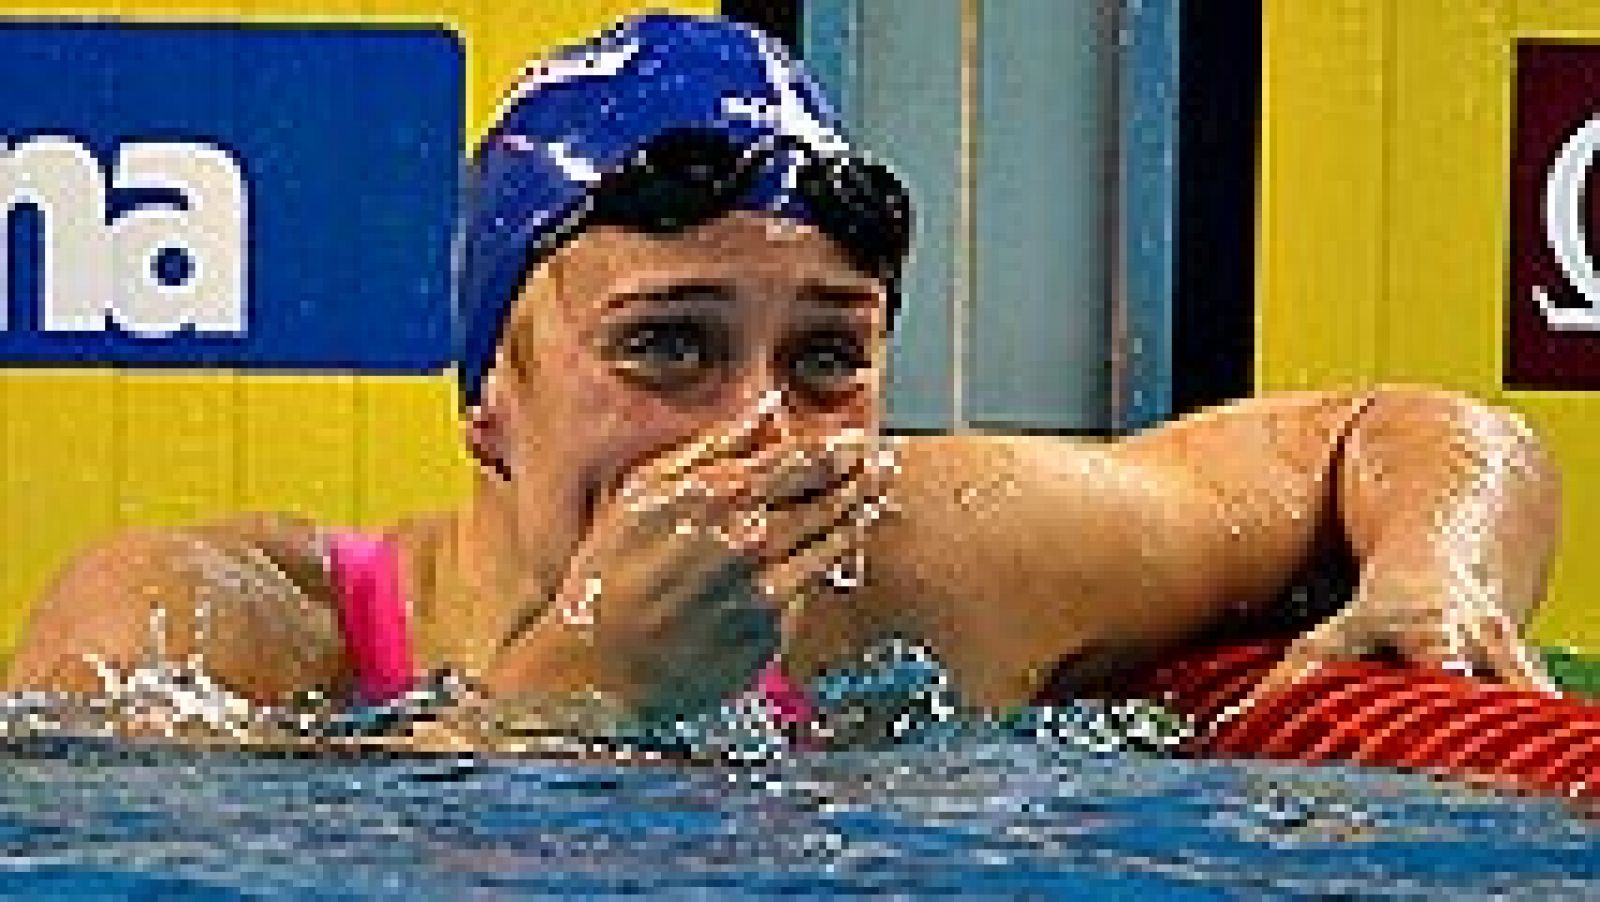 La nadadora española Mireia Belmonte sumó su tercer oro en los Mundiales de piscina corta que se disputan en Doha tras imponerse este jueves con un tiempo de 8:03.41 en la final de los 800 libres. Belmonte, que se quedó a más de cuatro segundos de su